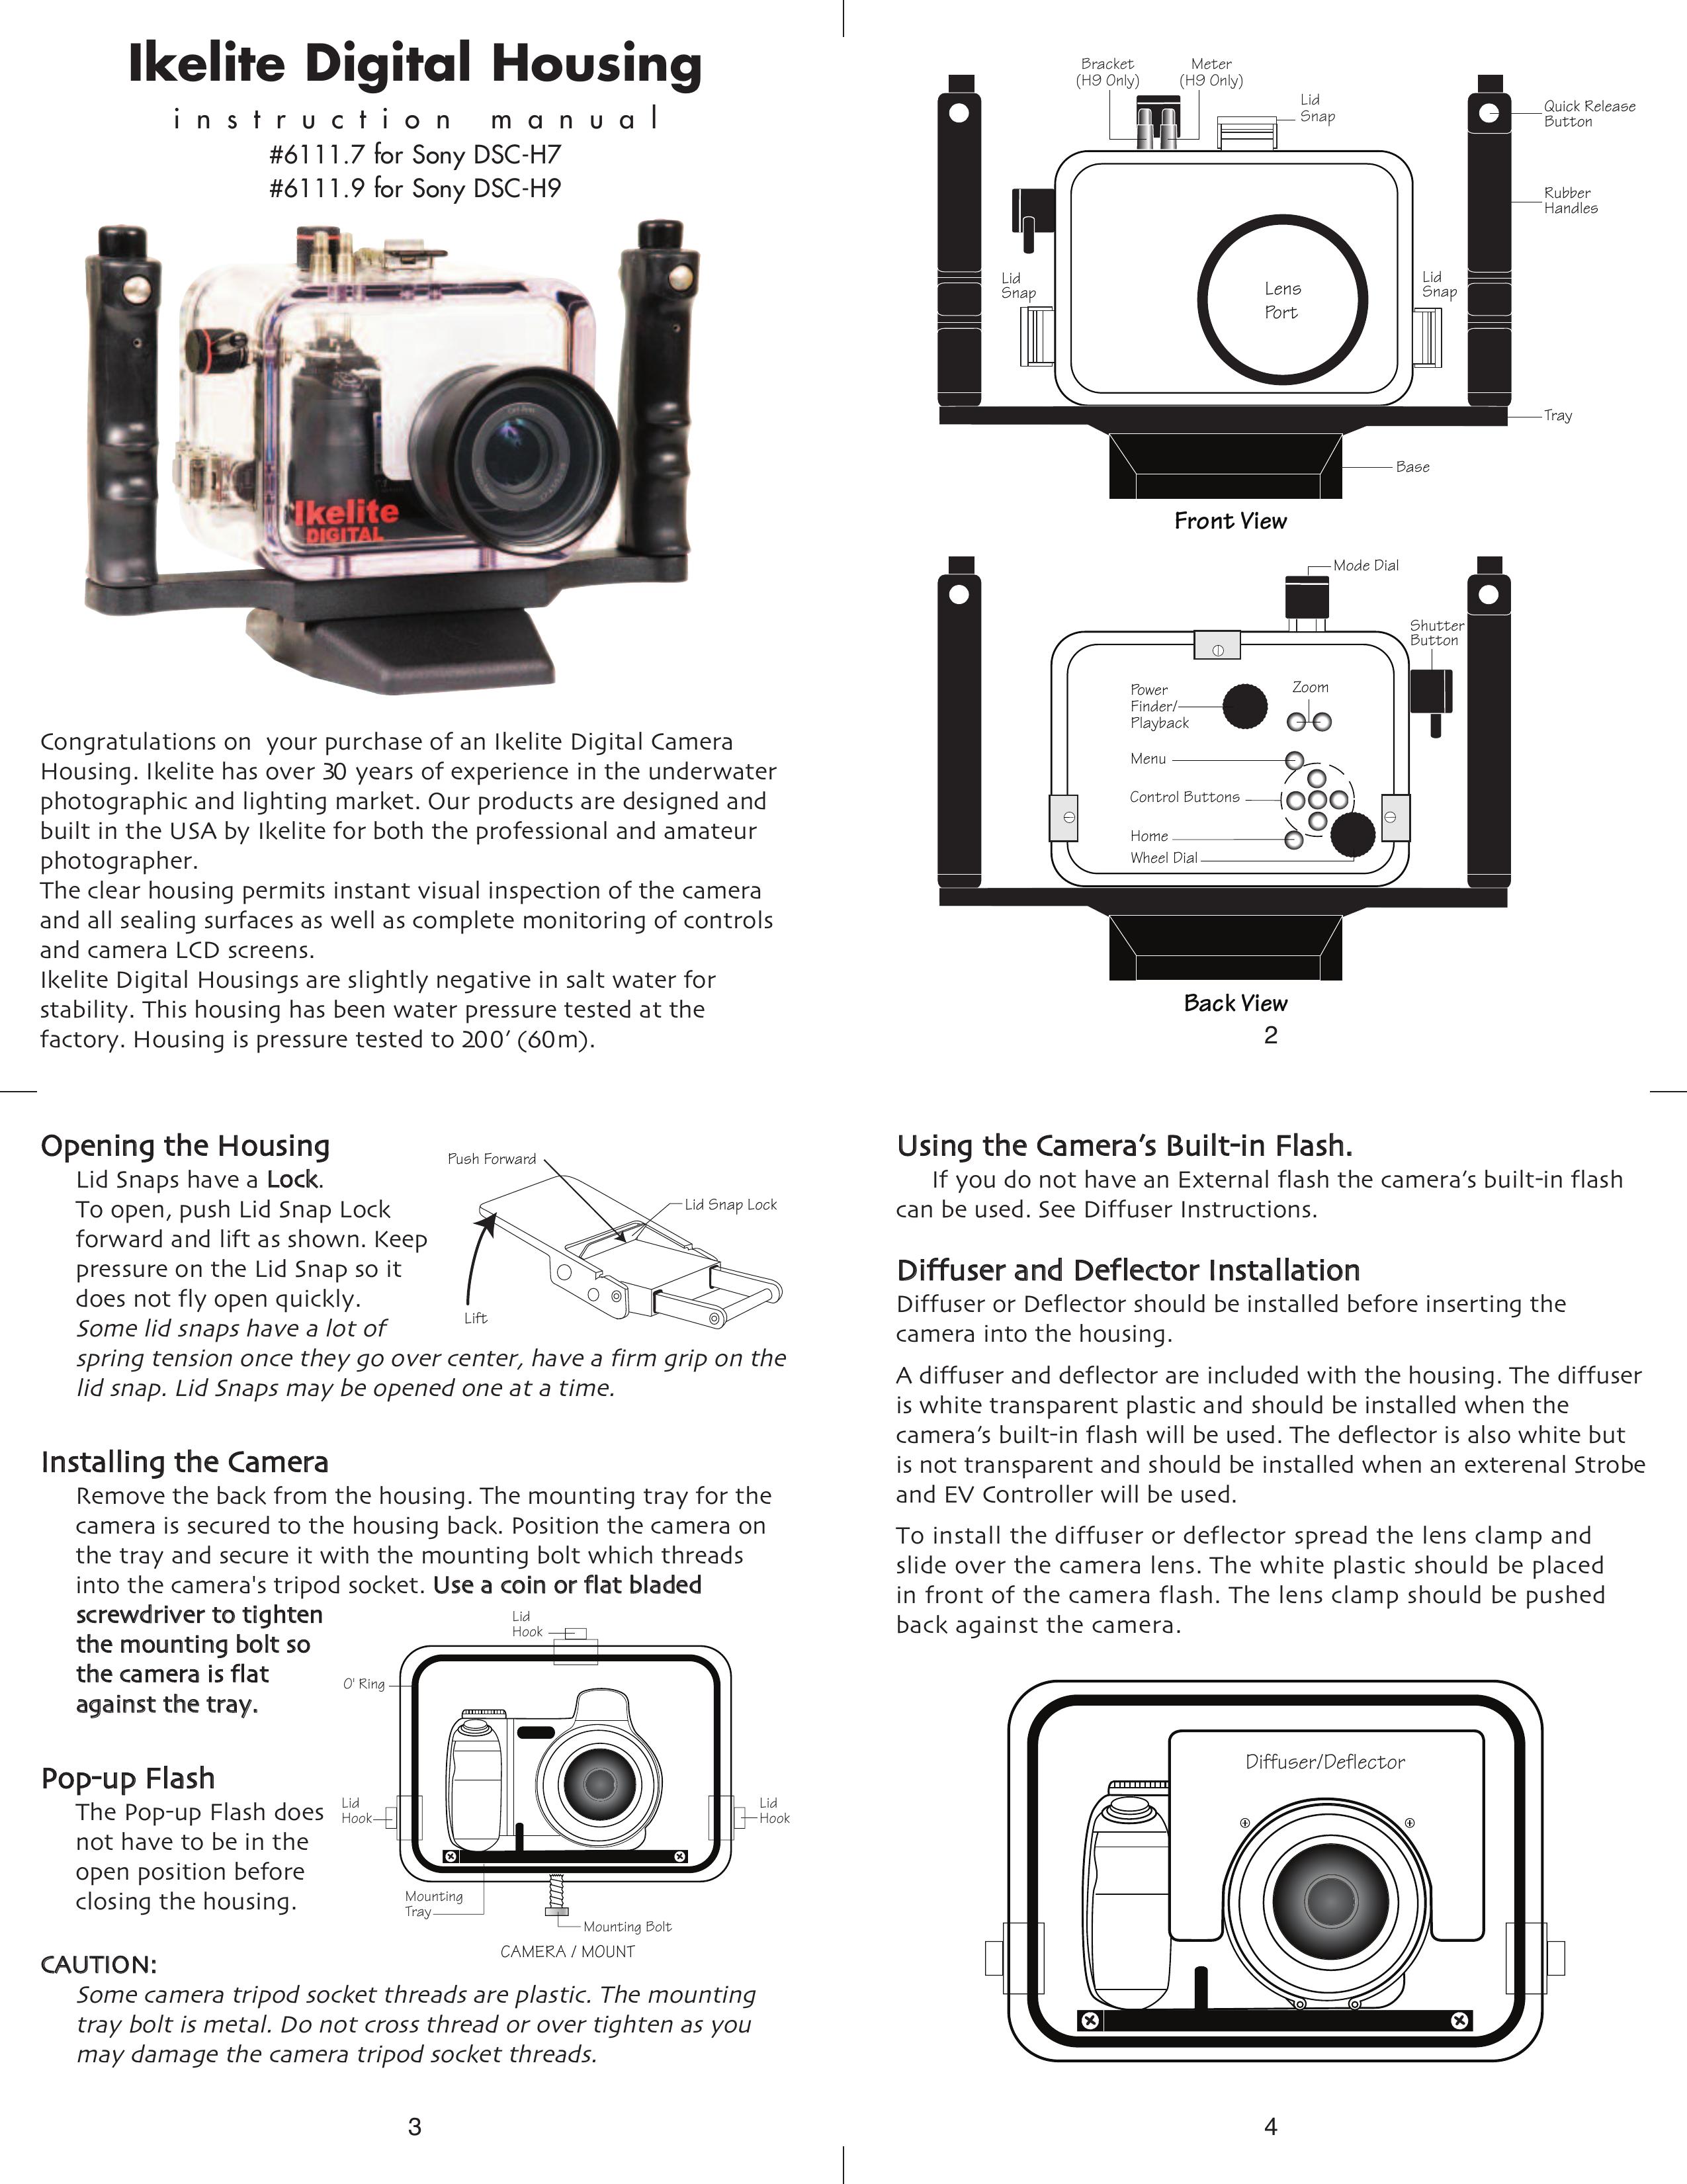 Ikelite DSC-H7 Digital Camera User Manual